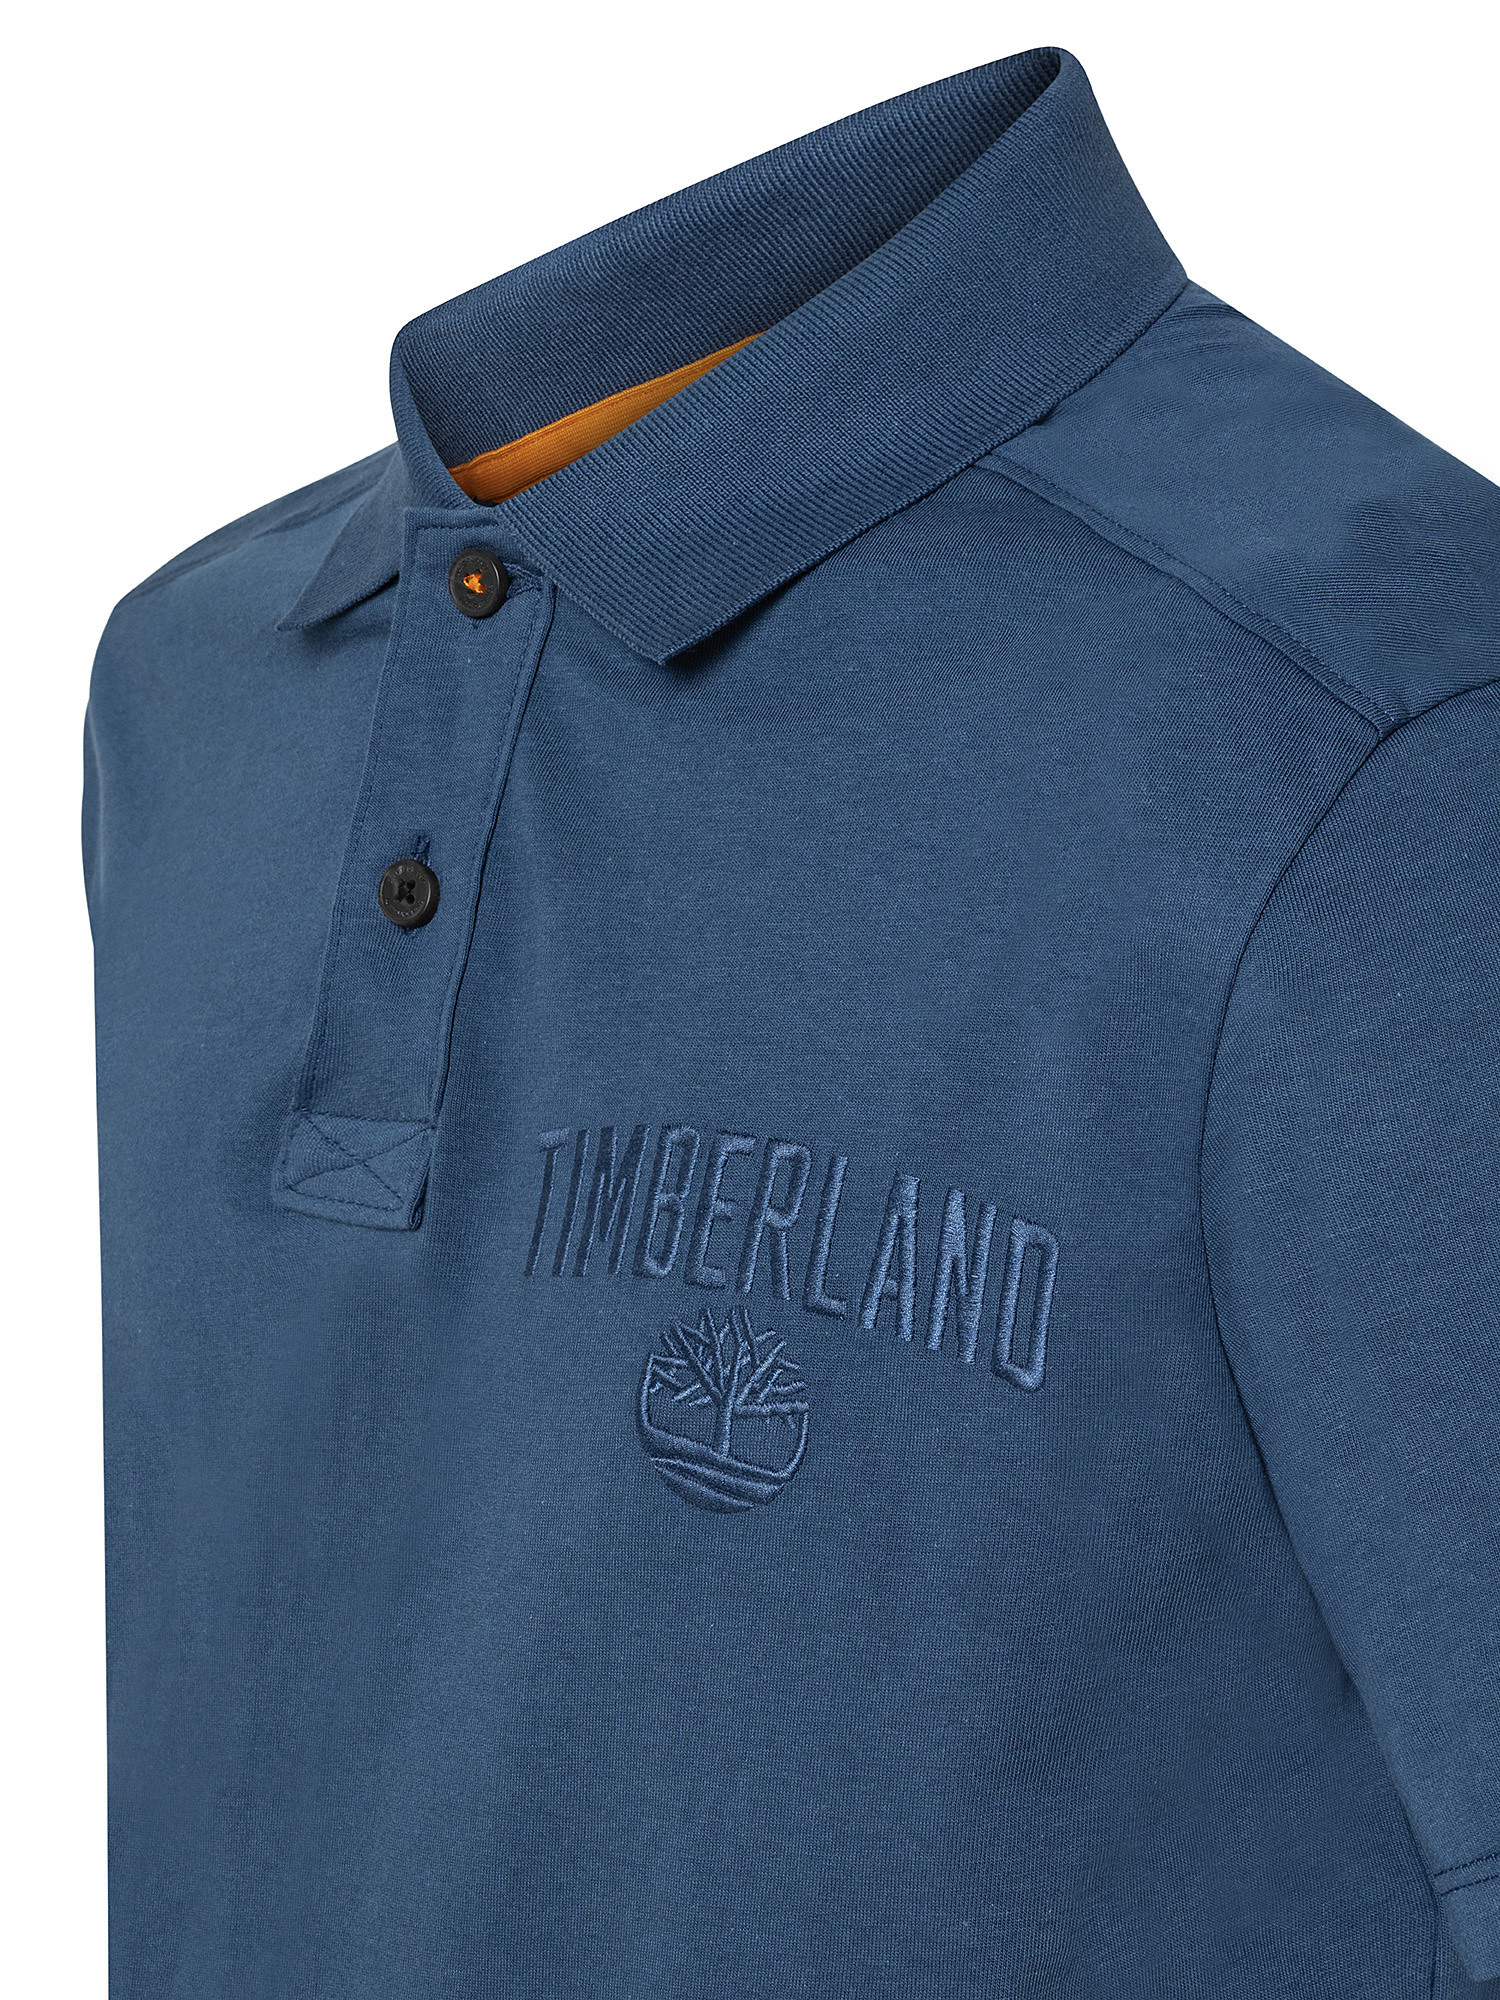 Men's Outdoor Heritage EK + Polo Shirt, Blue, large image number 2